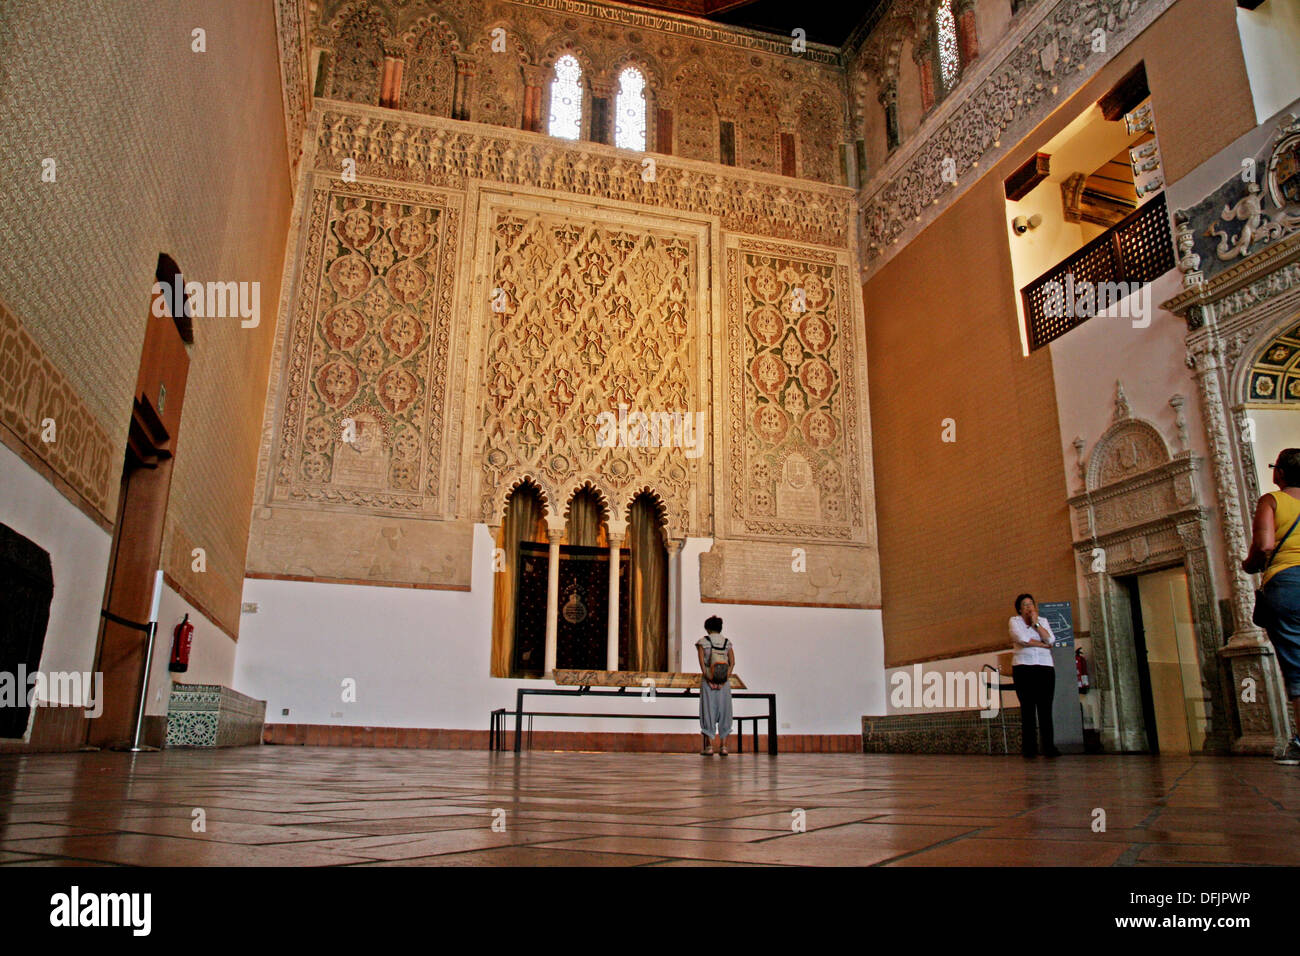 Transit Synagogue, s. XIV, Sephardic Museum, Toledo, Spain. Stock Photo